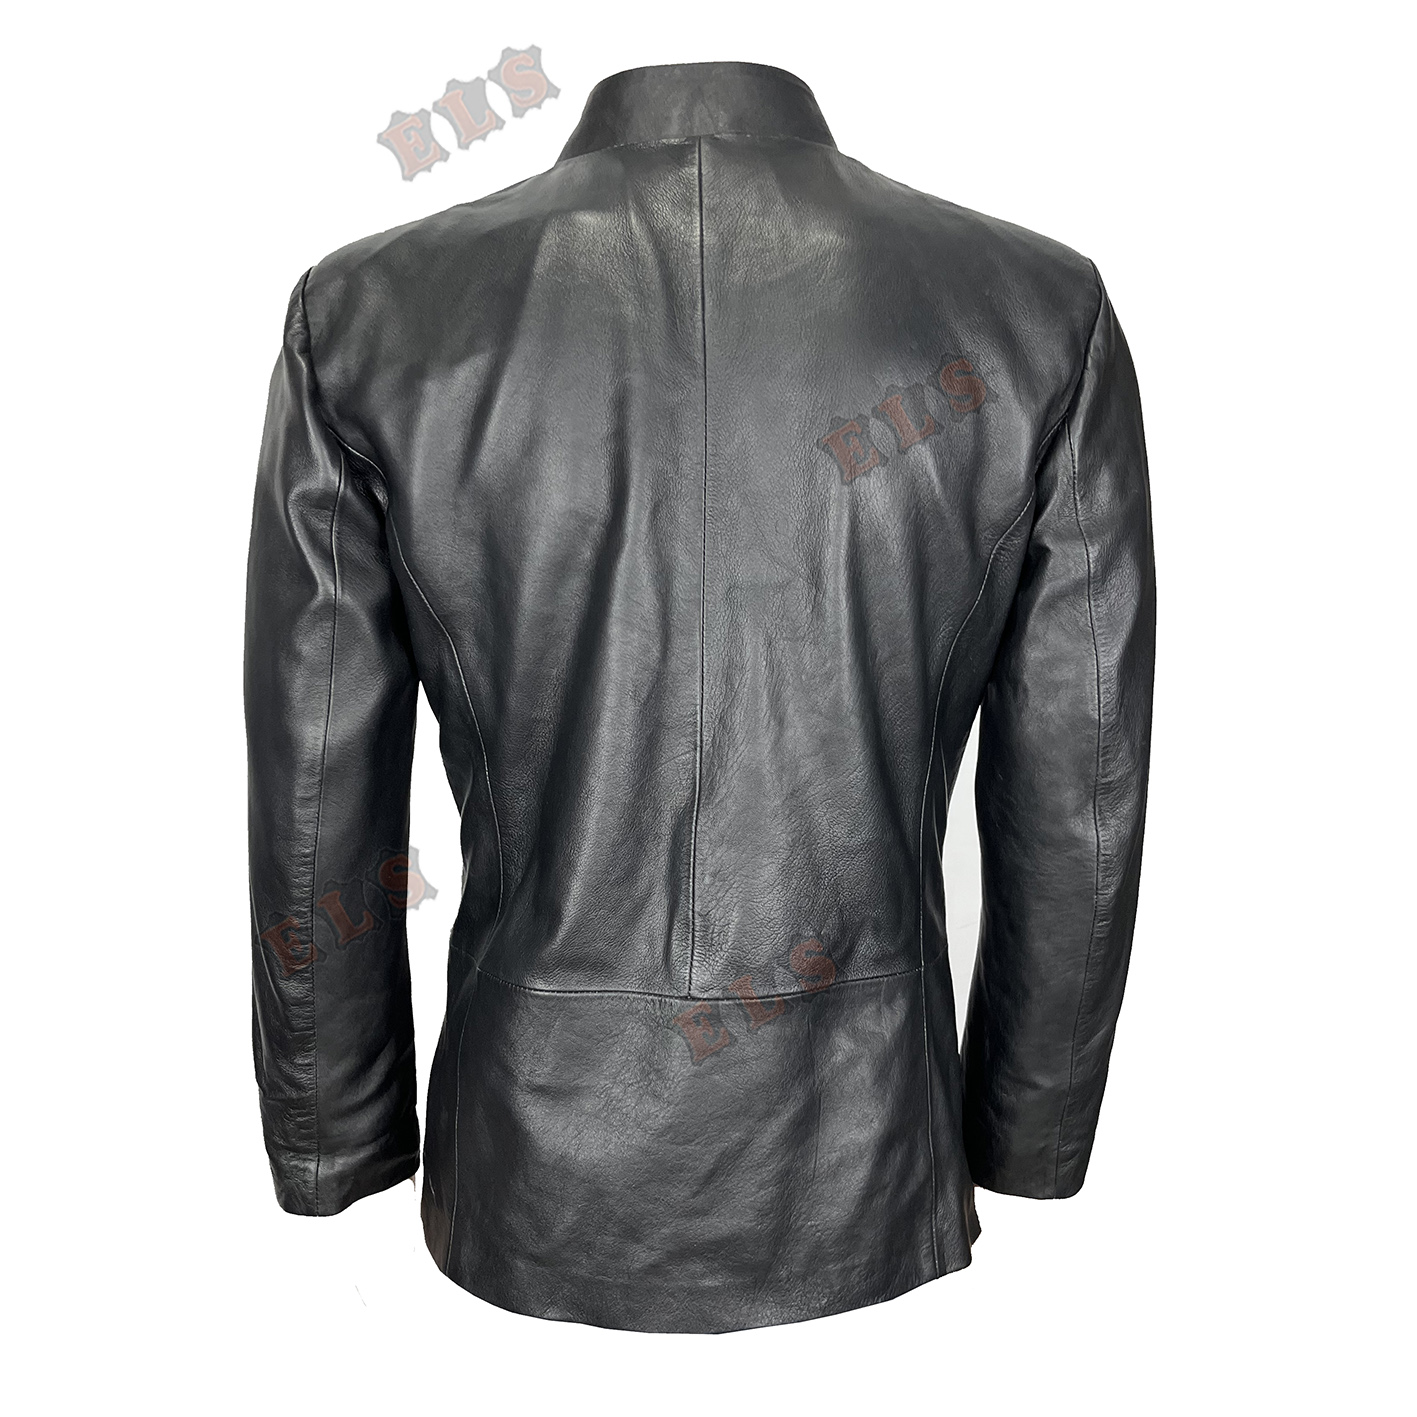 ELS Section 31 Black Leather Jacket back 1.jpg